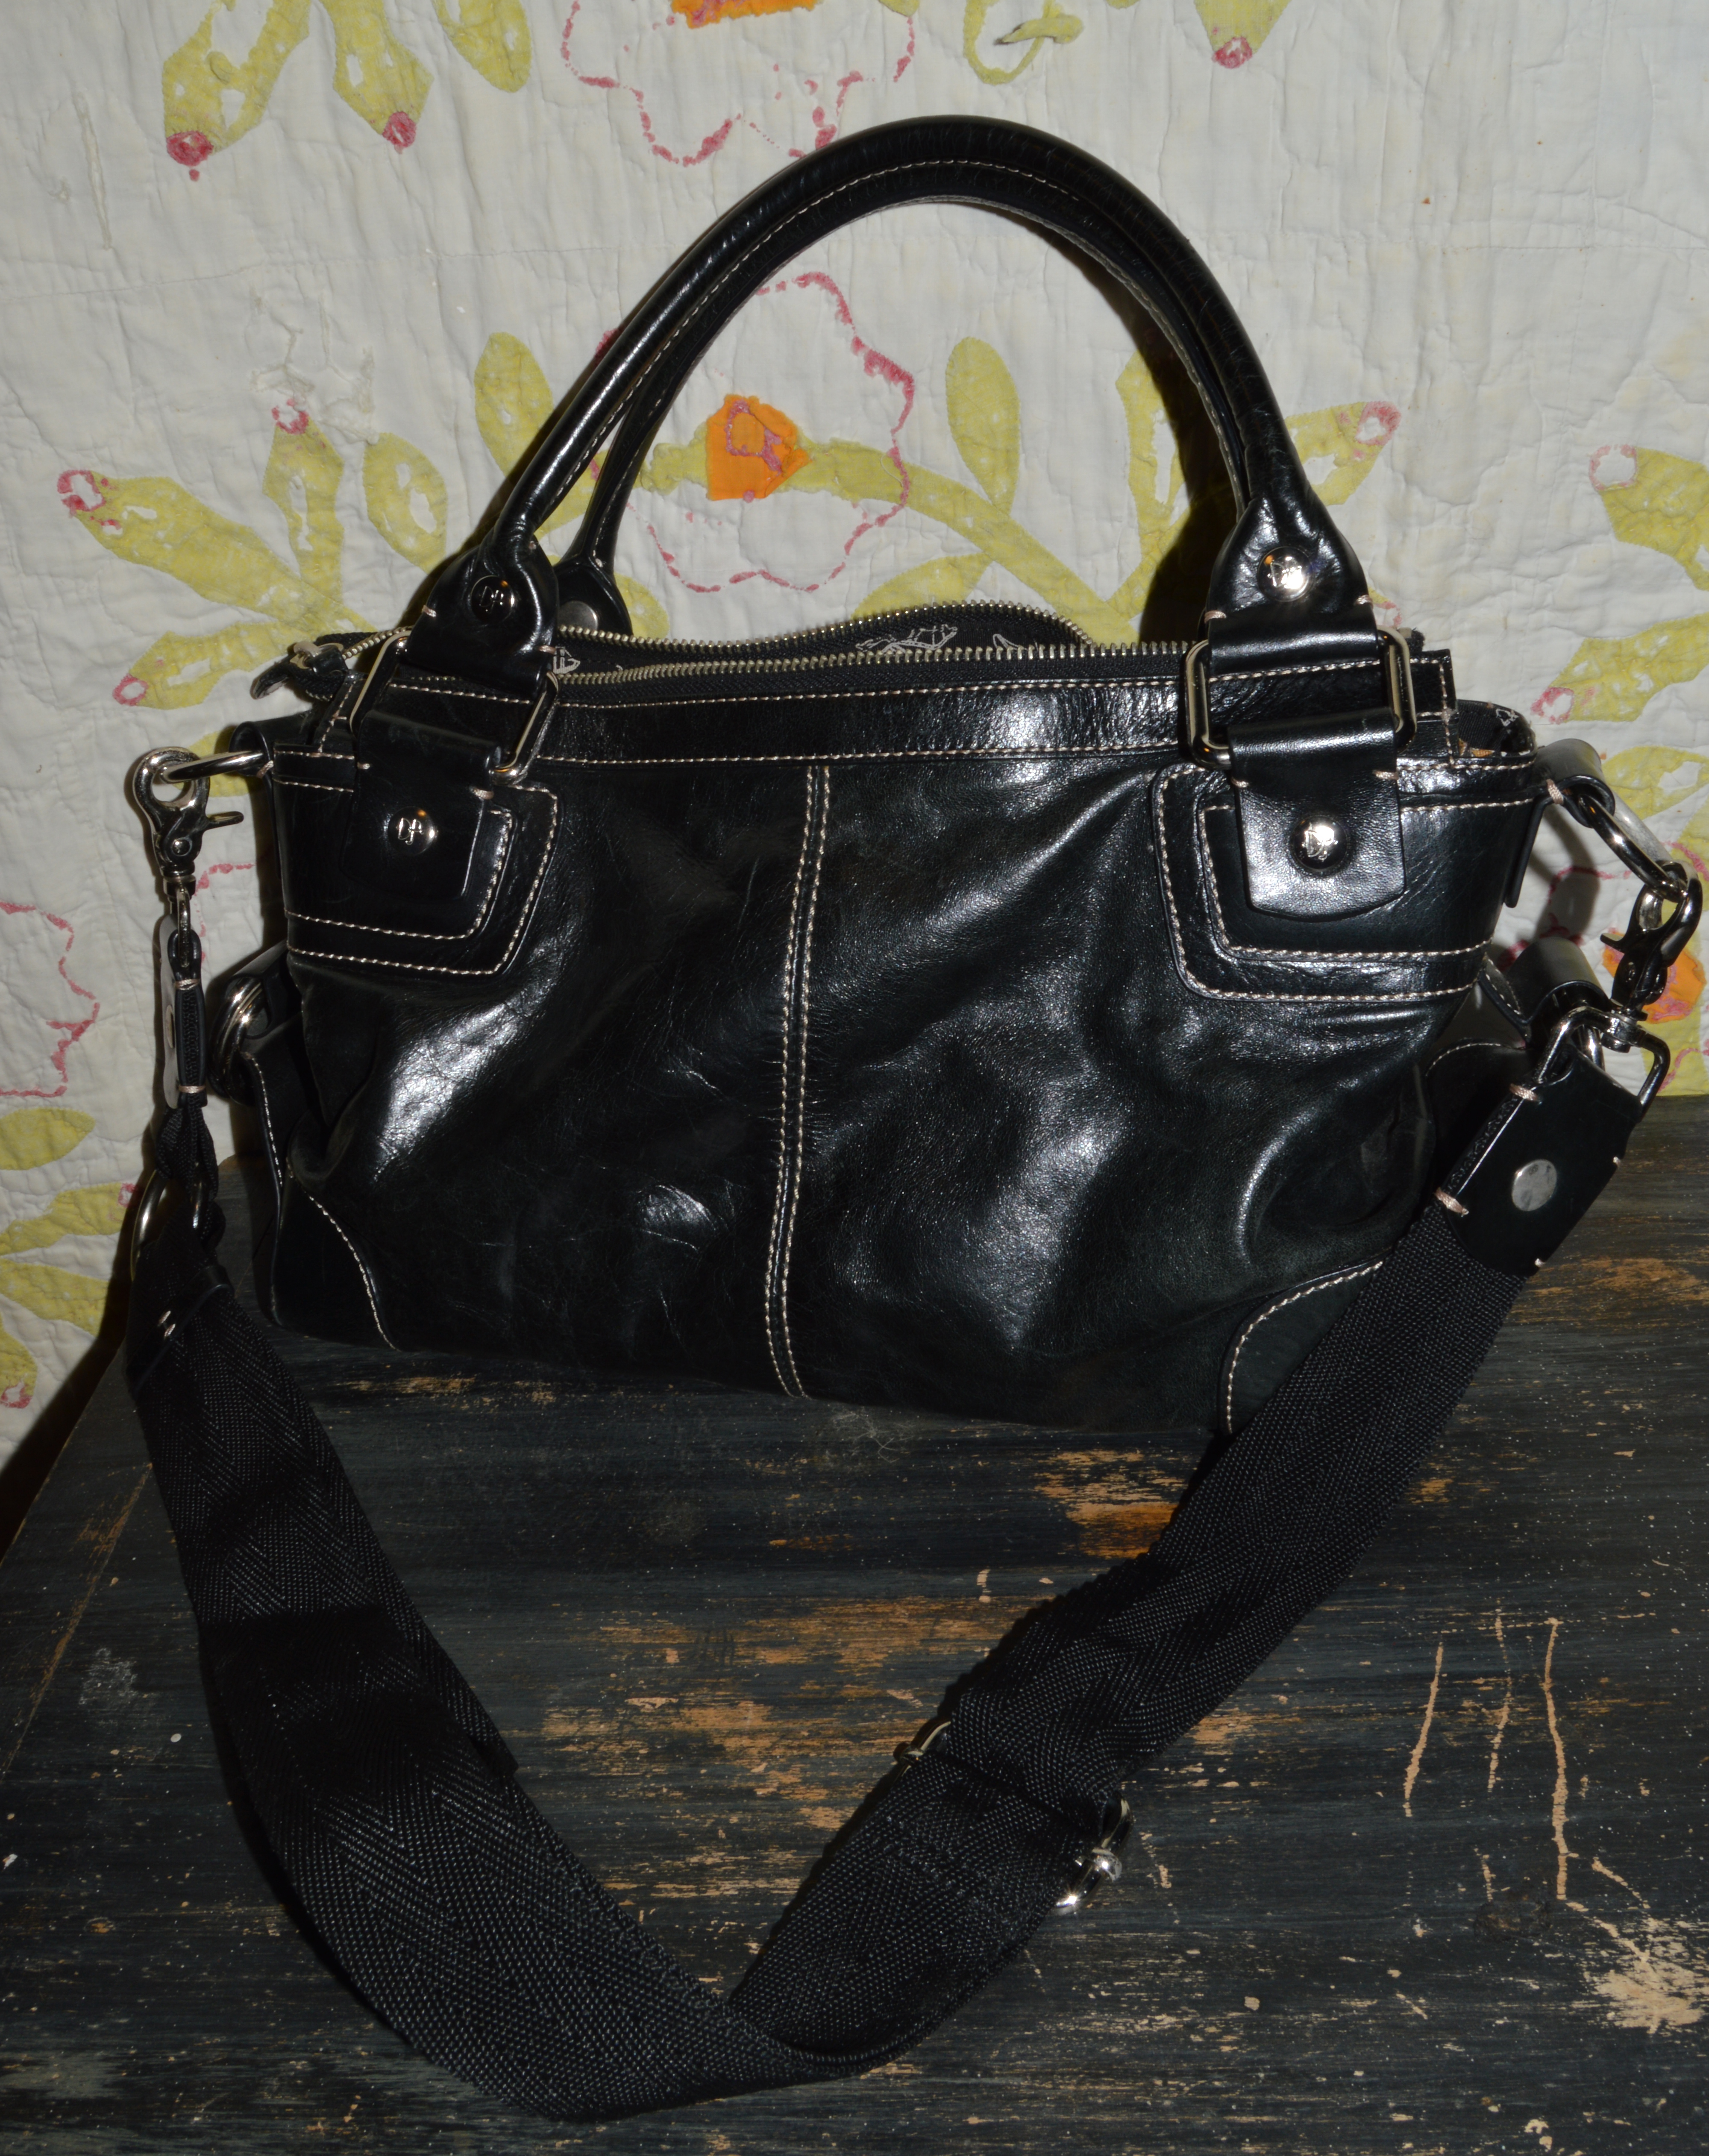 BROMEN Purses and Handbags for Women Designer Hobo Bag